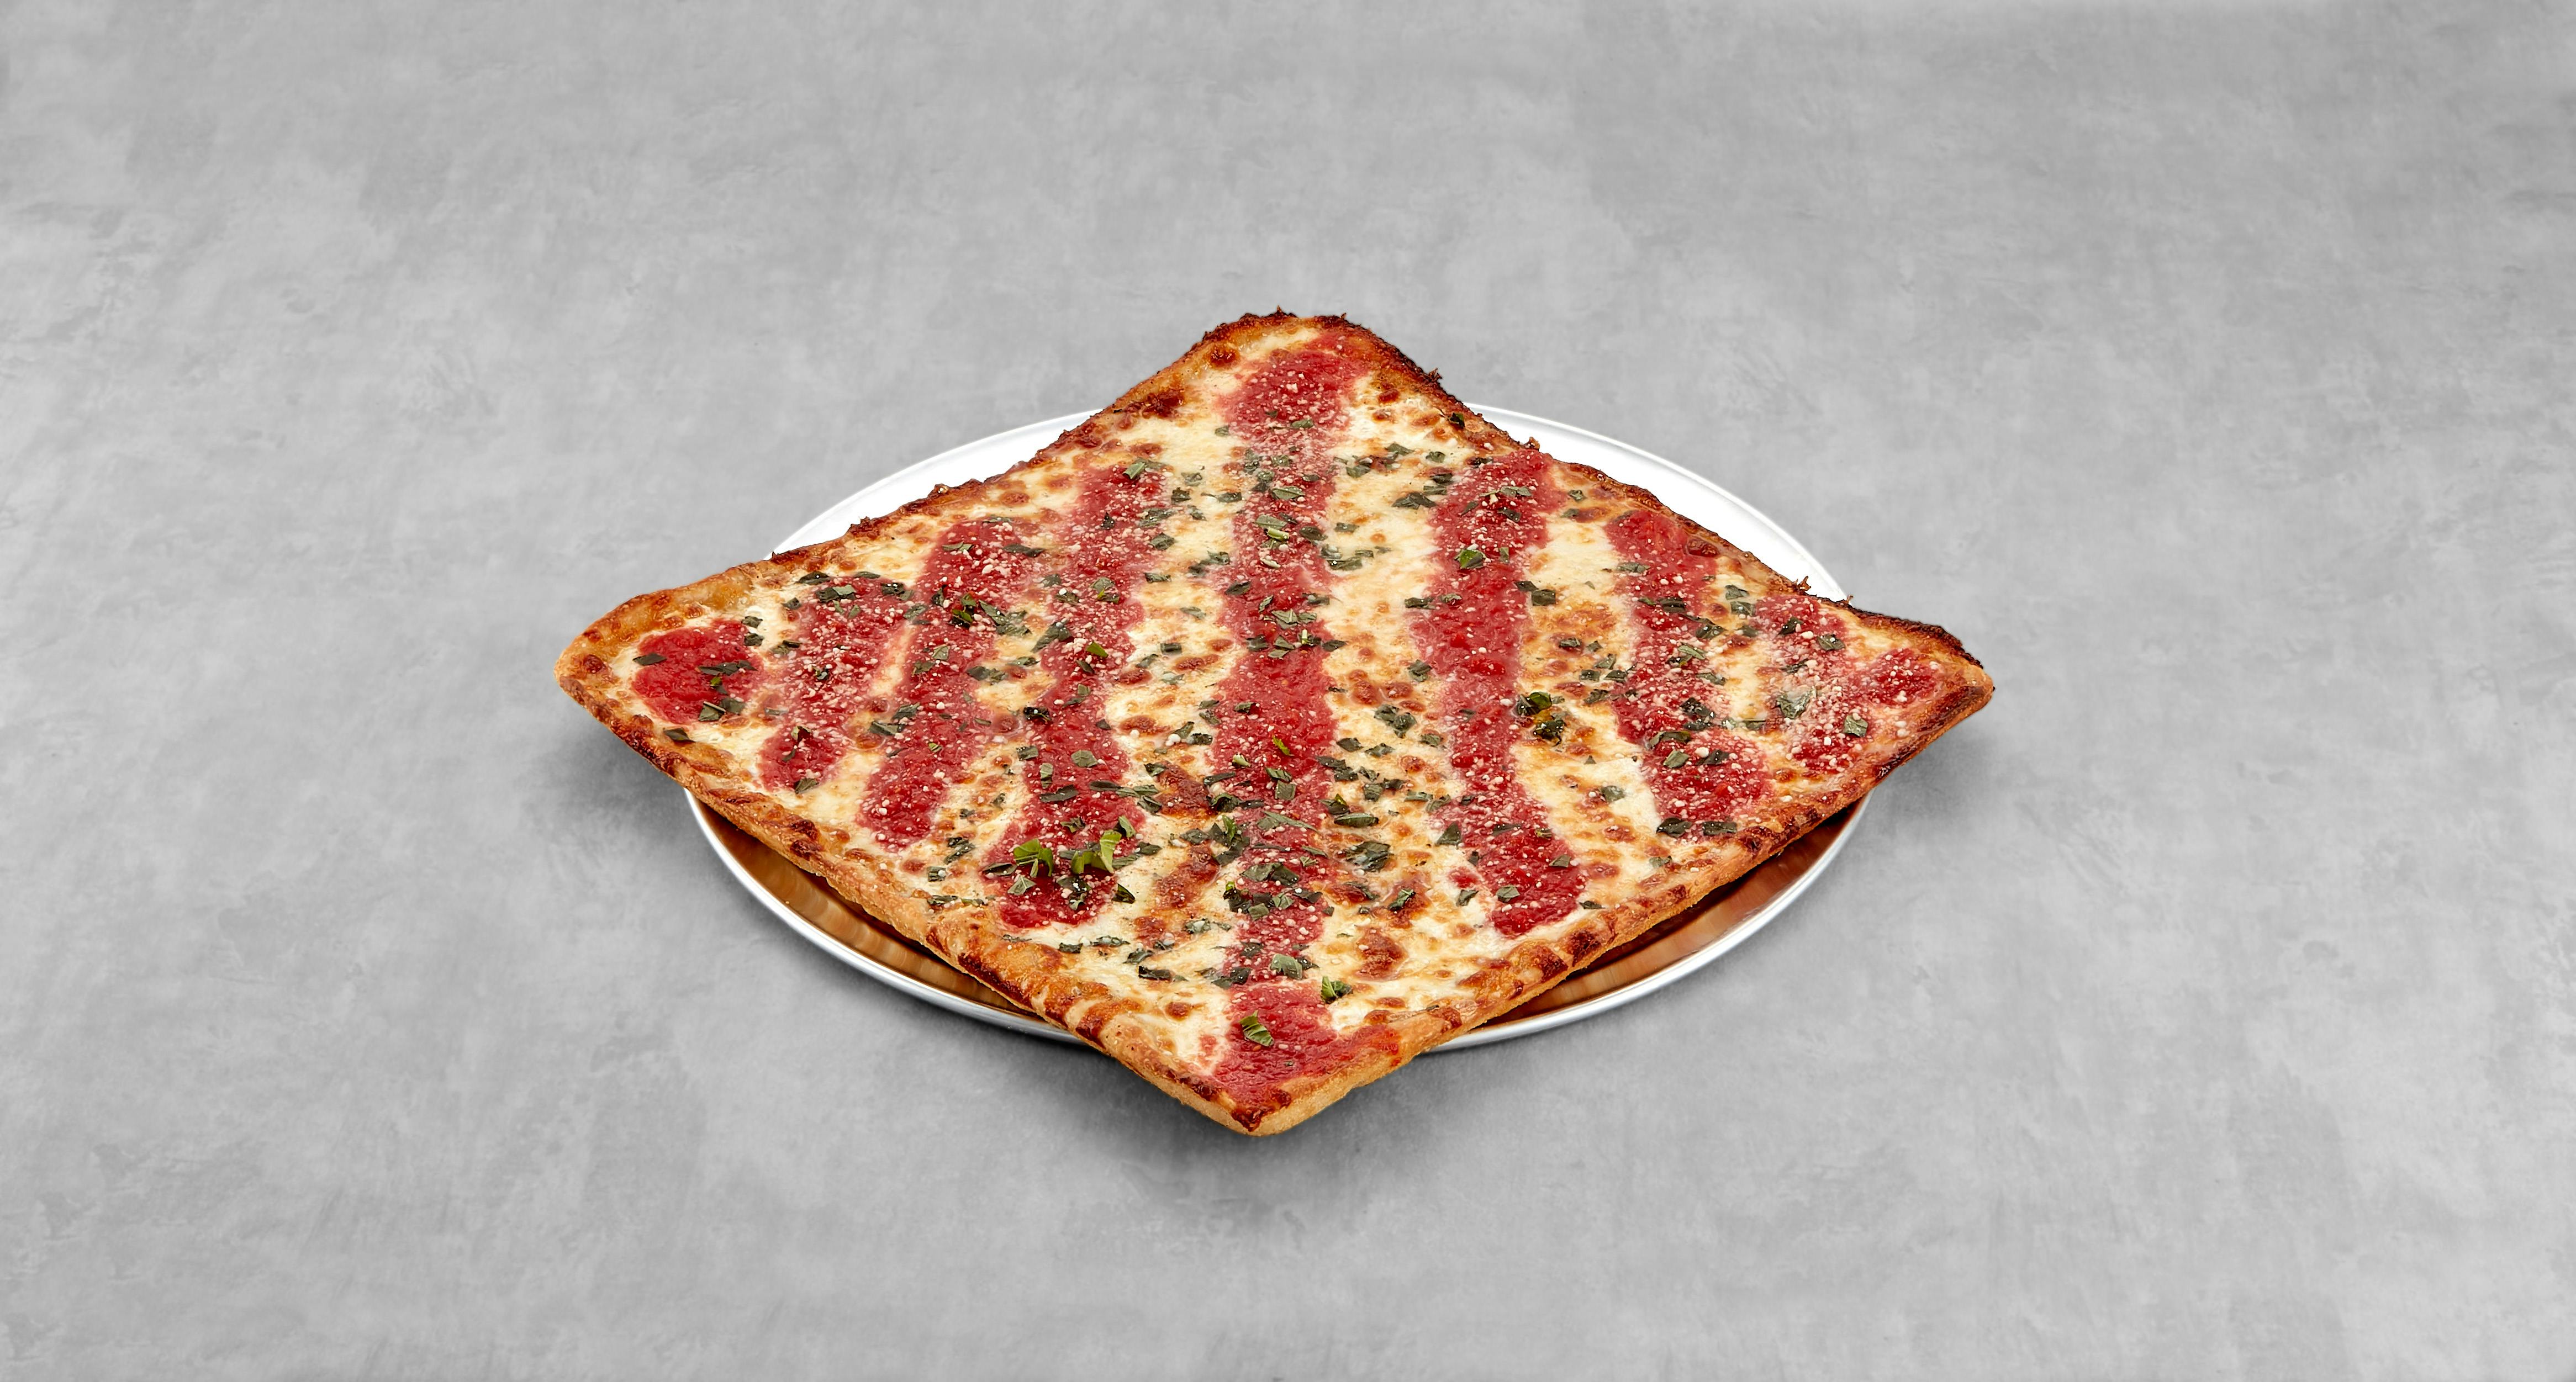 Grandma Pizza Sicilian from Mario's Pizzeria in Seaford, NY